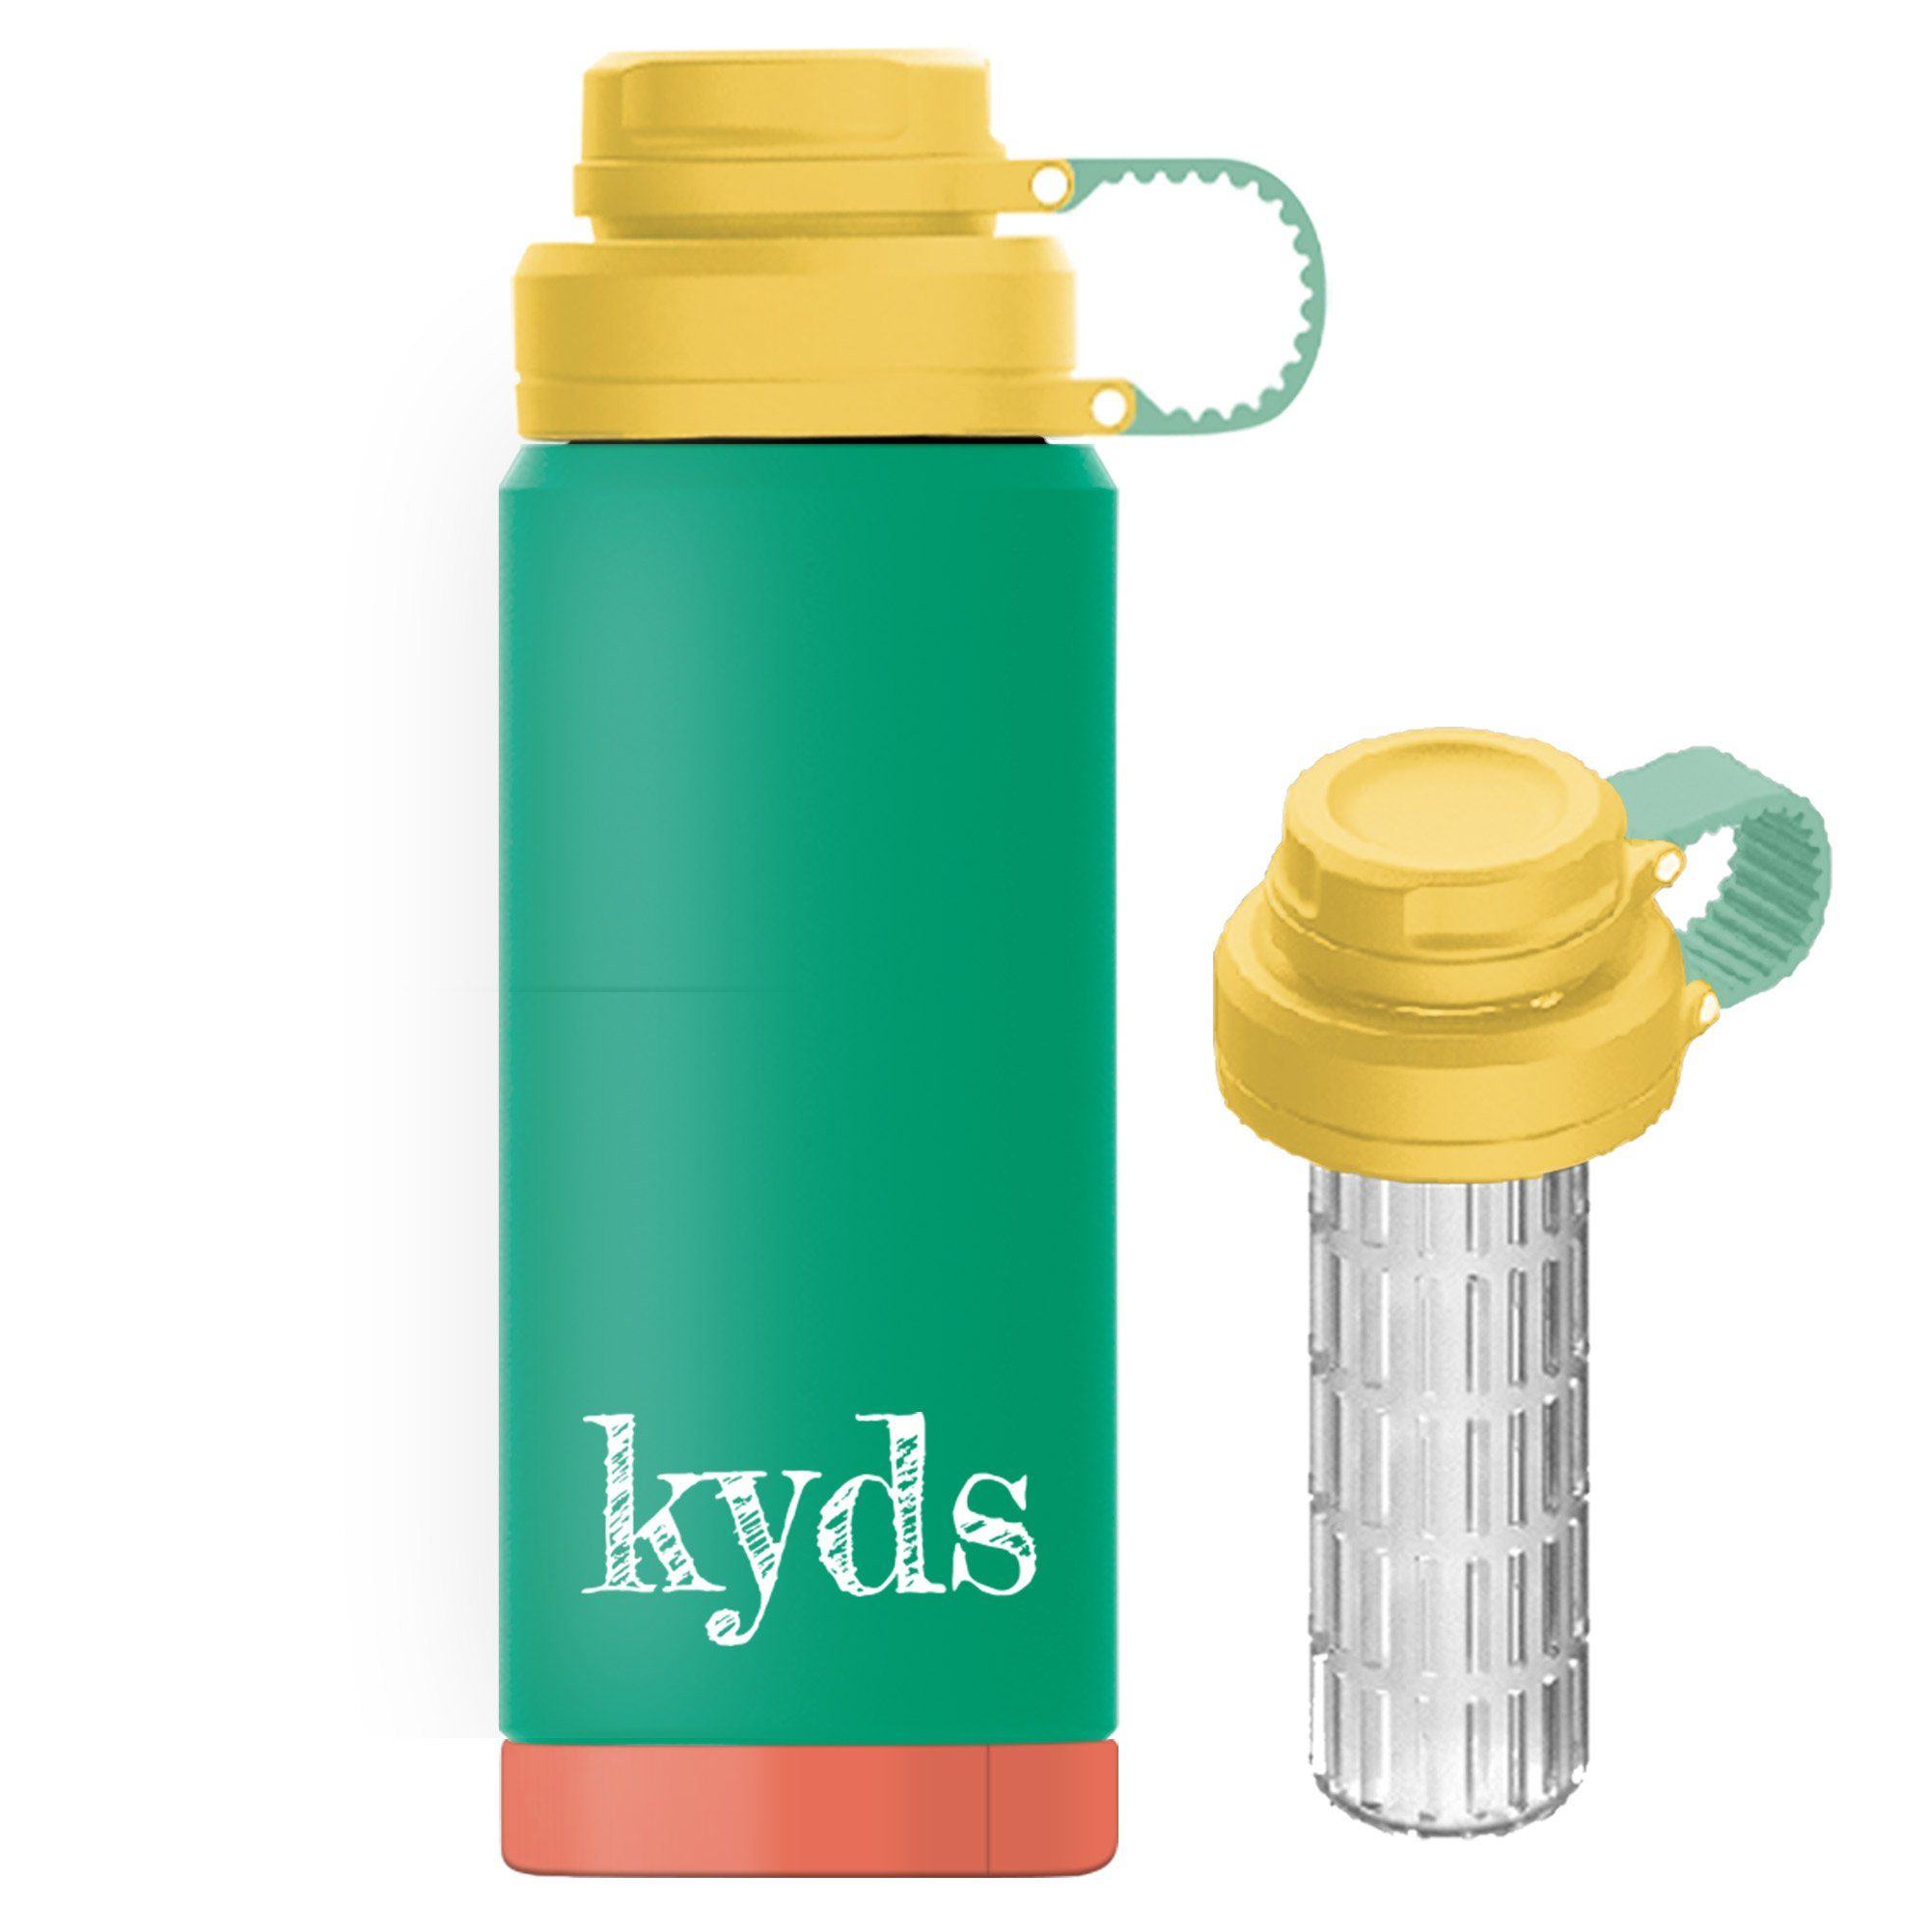 kyds Isolierflasche Trinkflasche, auslaufsicher, BPA-frei, Edelstahl, Inhalt 350ml oder Inhalt 500ml Green/Coral